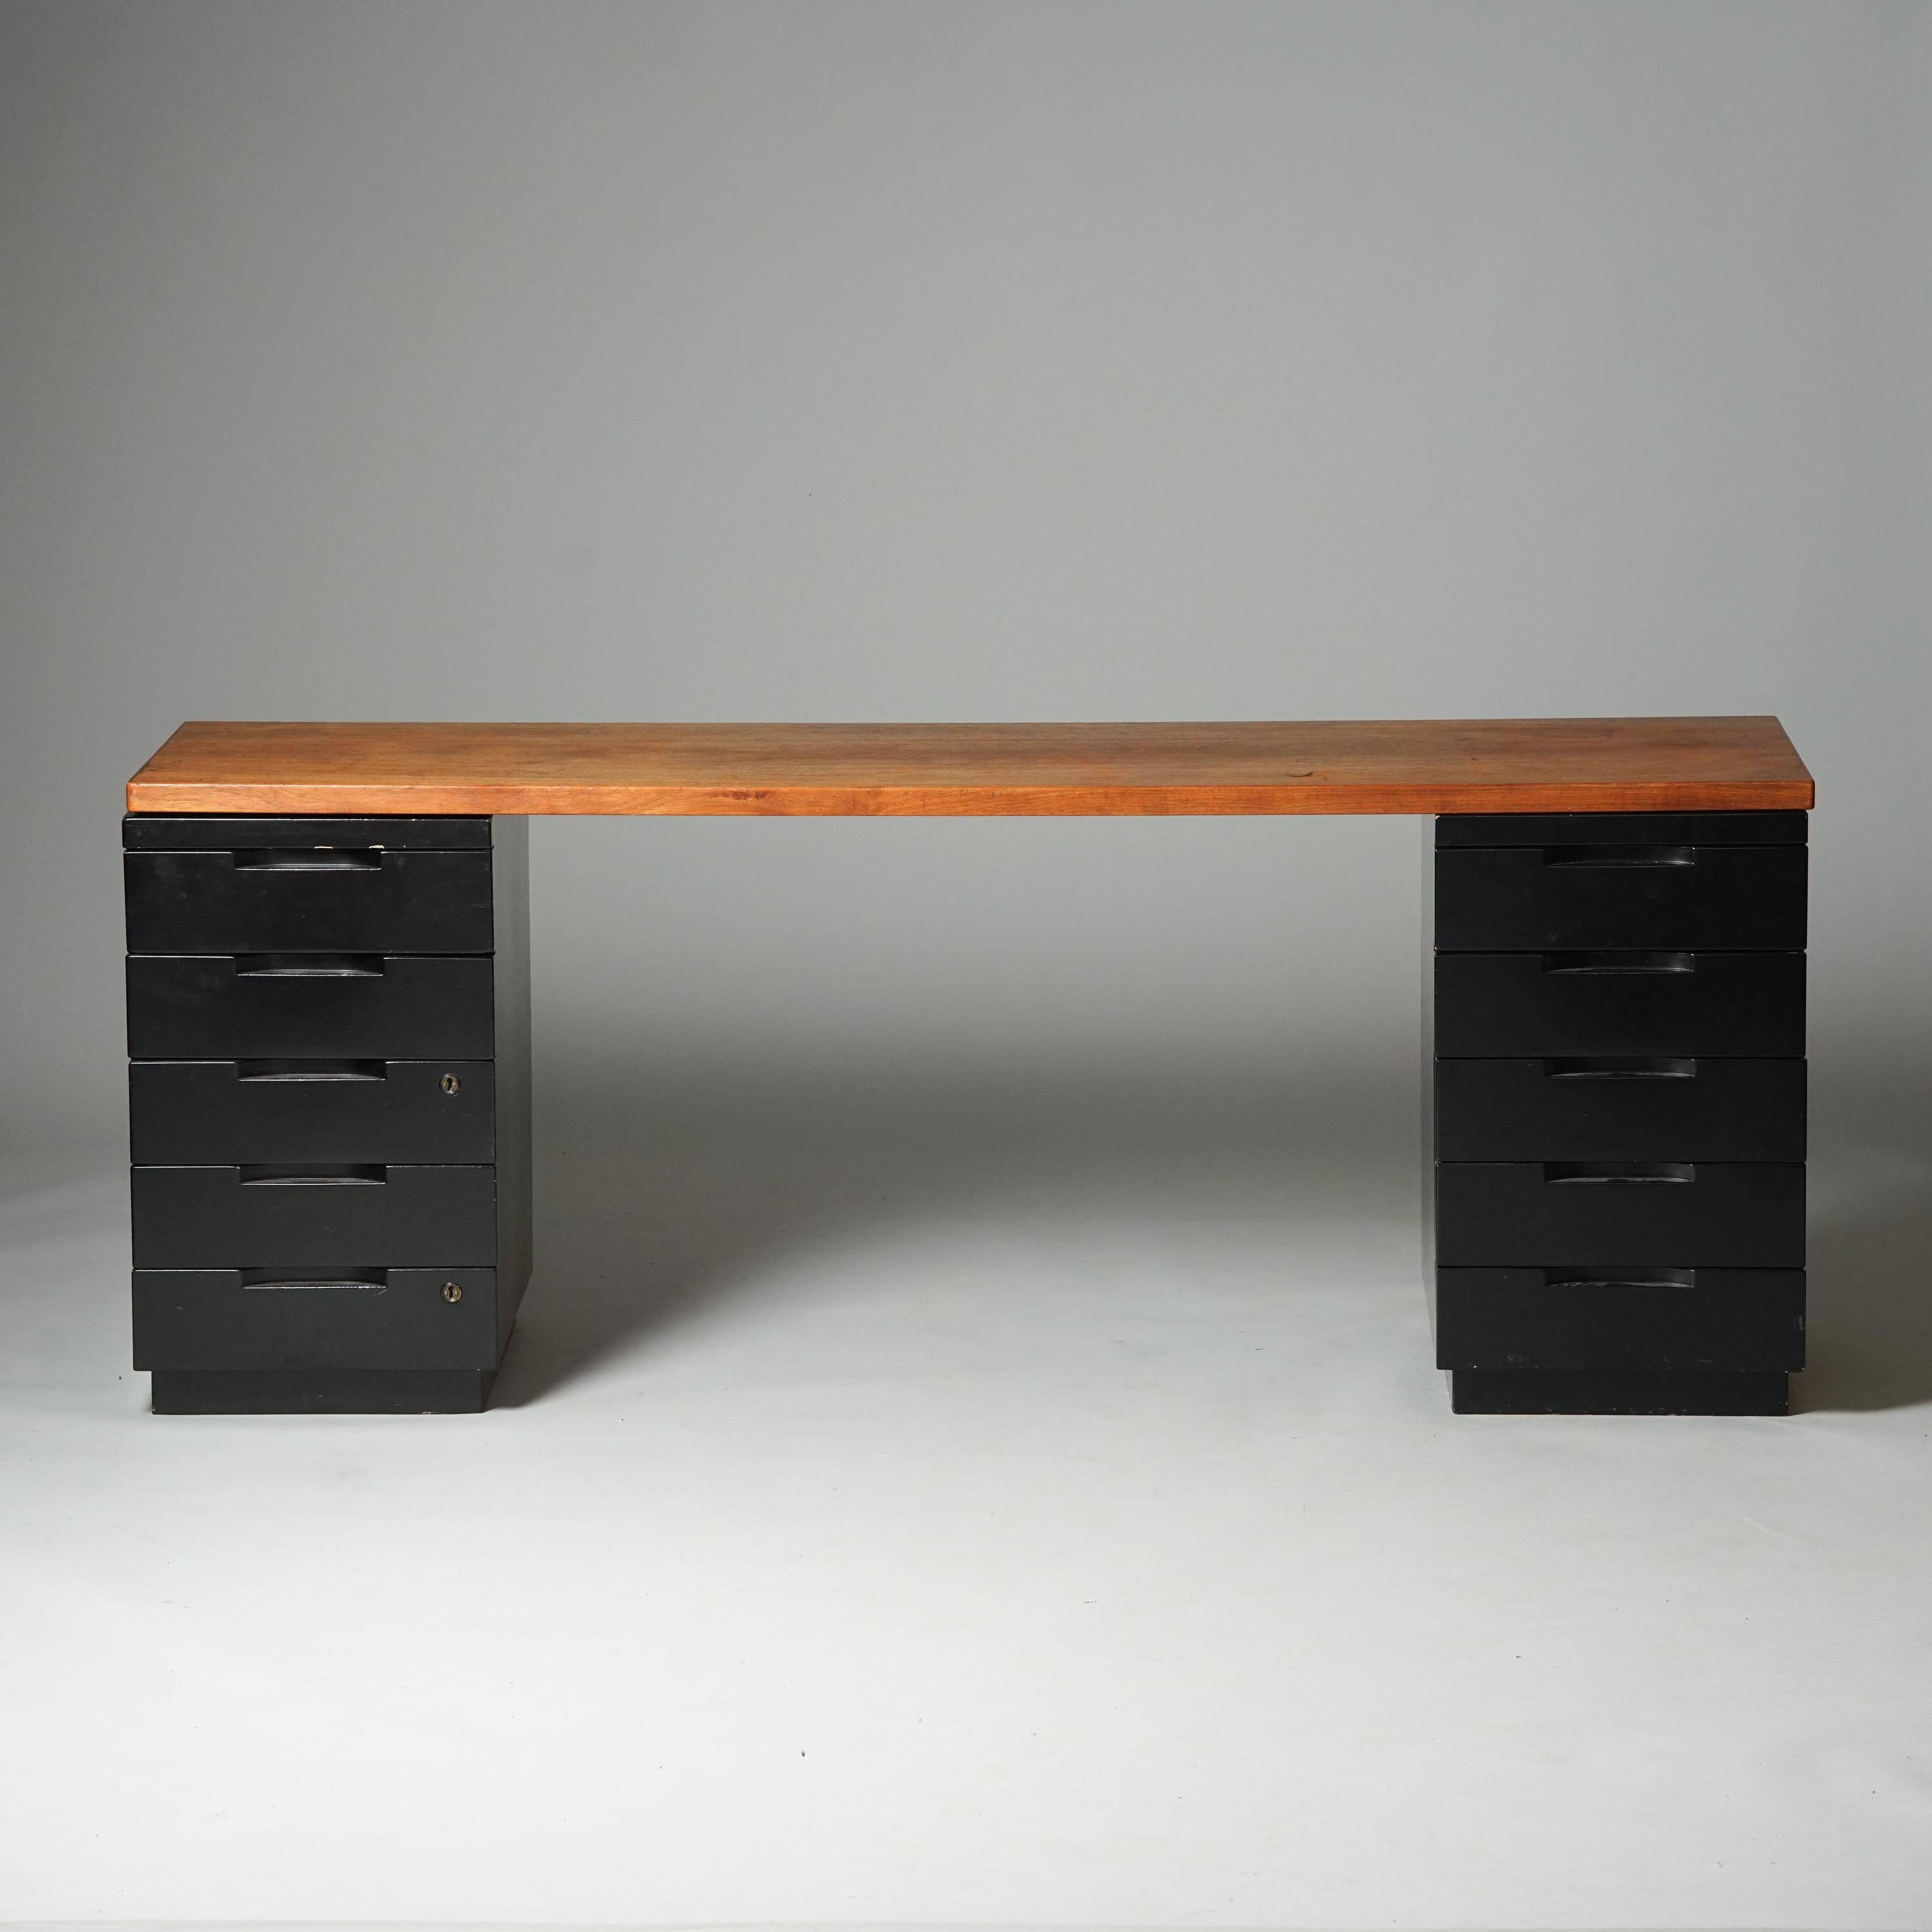 Schreibtisch, Entwurf Alvar Aalto, hergestellt von Artek, 1950/1960er Jahre. Tischplatte aus Teakholz mit Schubladen aus lackiertem Holz. Guter Vintage-Zustand, Patina und Abnutzung im Einklang mit Alter und Gebrauch. 

Alvar Aalto (1898-1976) ist